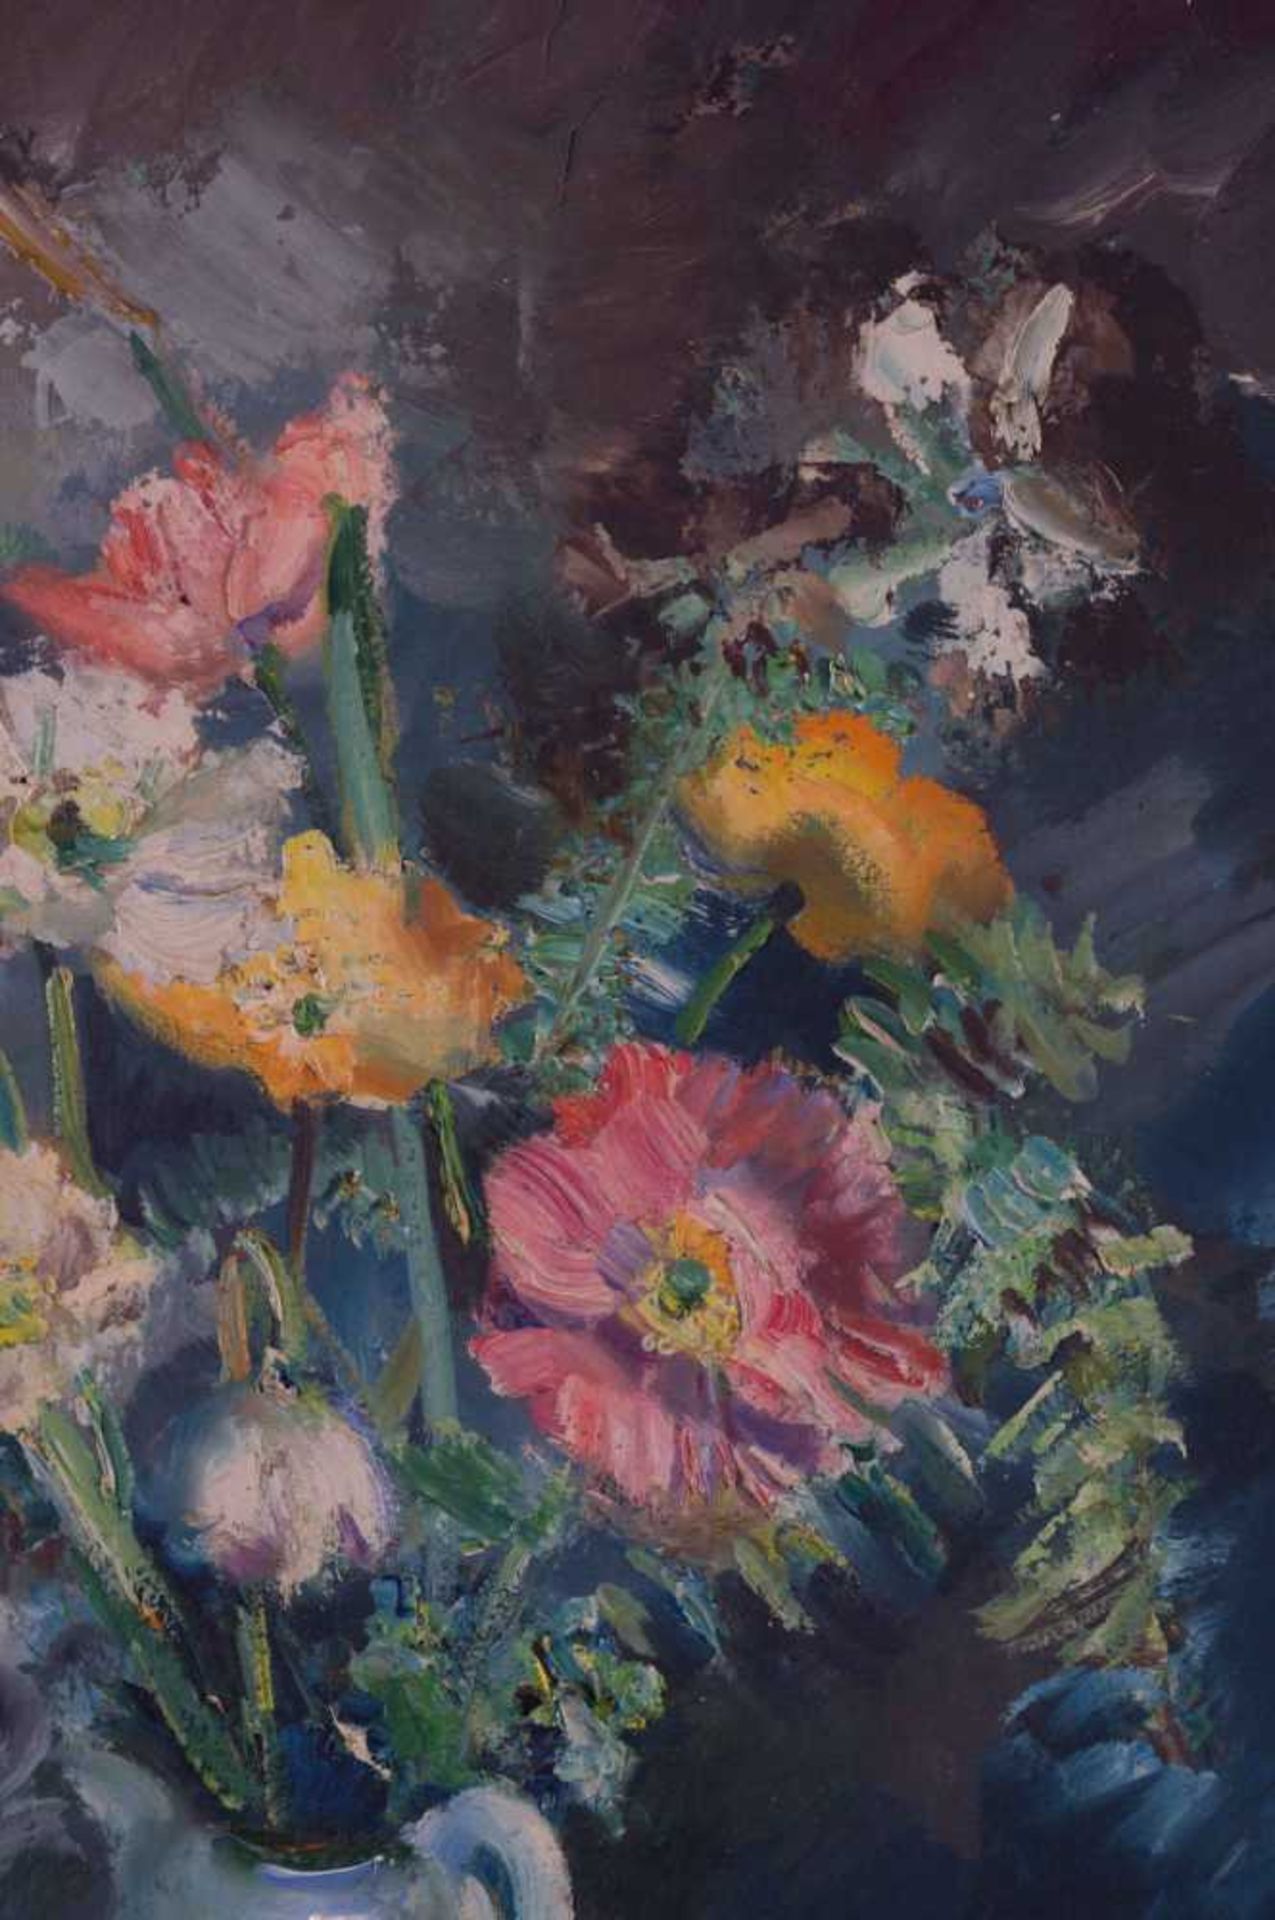 unbekannter Künstler des 19./20. Jhd. "Blumenstillleben" Gemälde Öl/Karton, 49 cm x 41 cm, rechts - Bild 3 aus 7